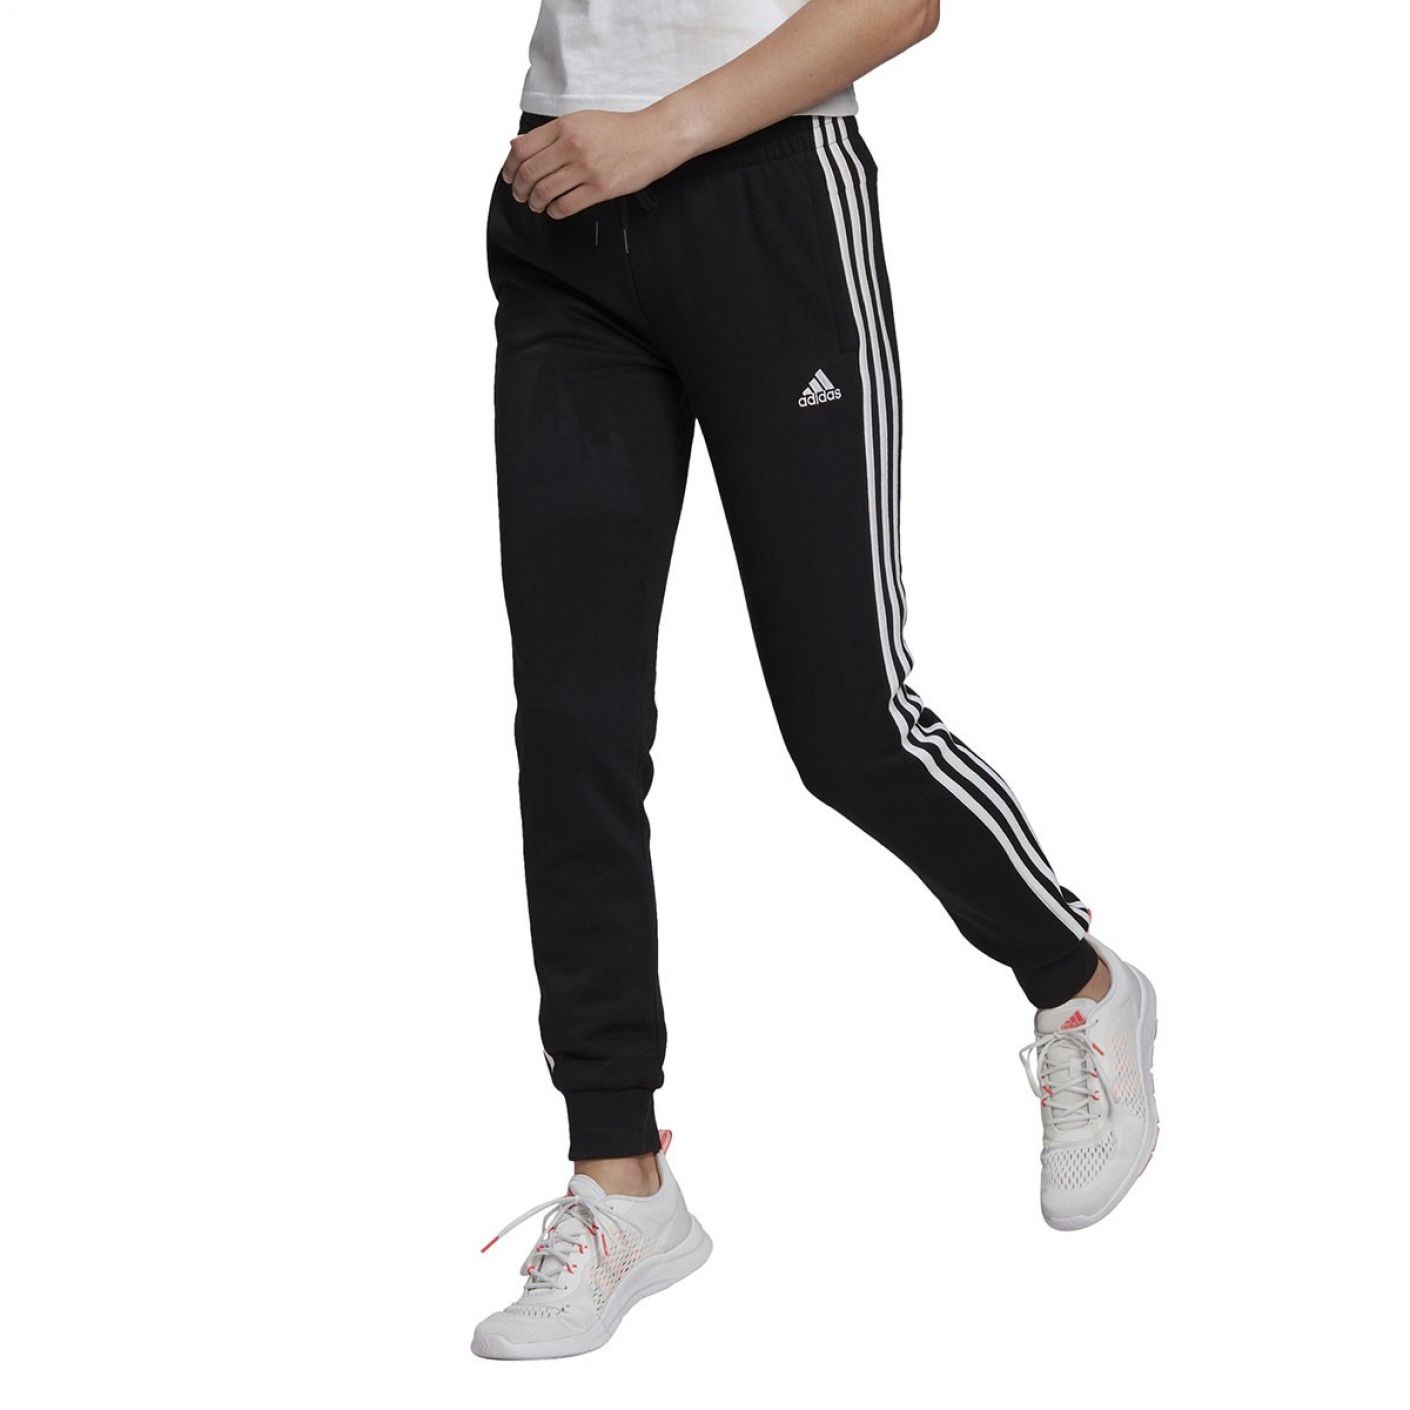 Adidas Pantalone 3Stripes Essentials Slim Black White